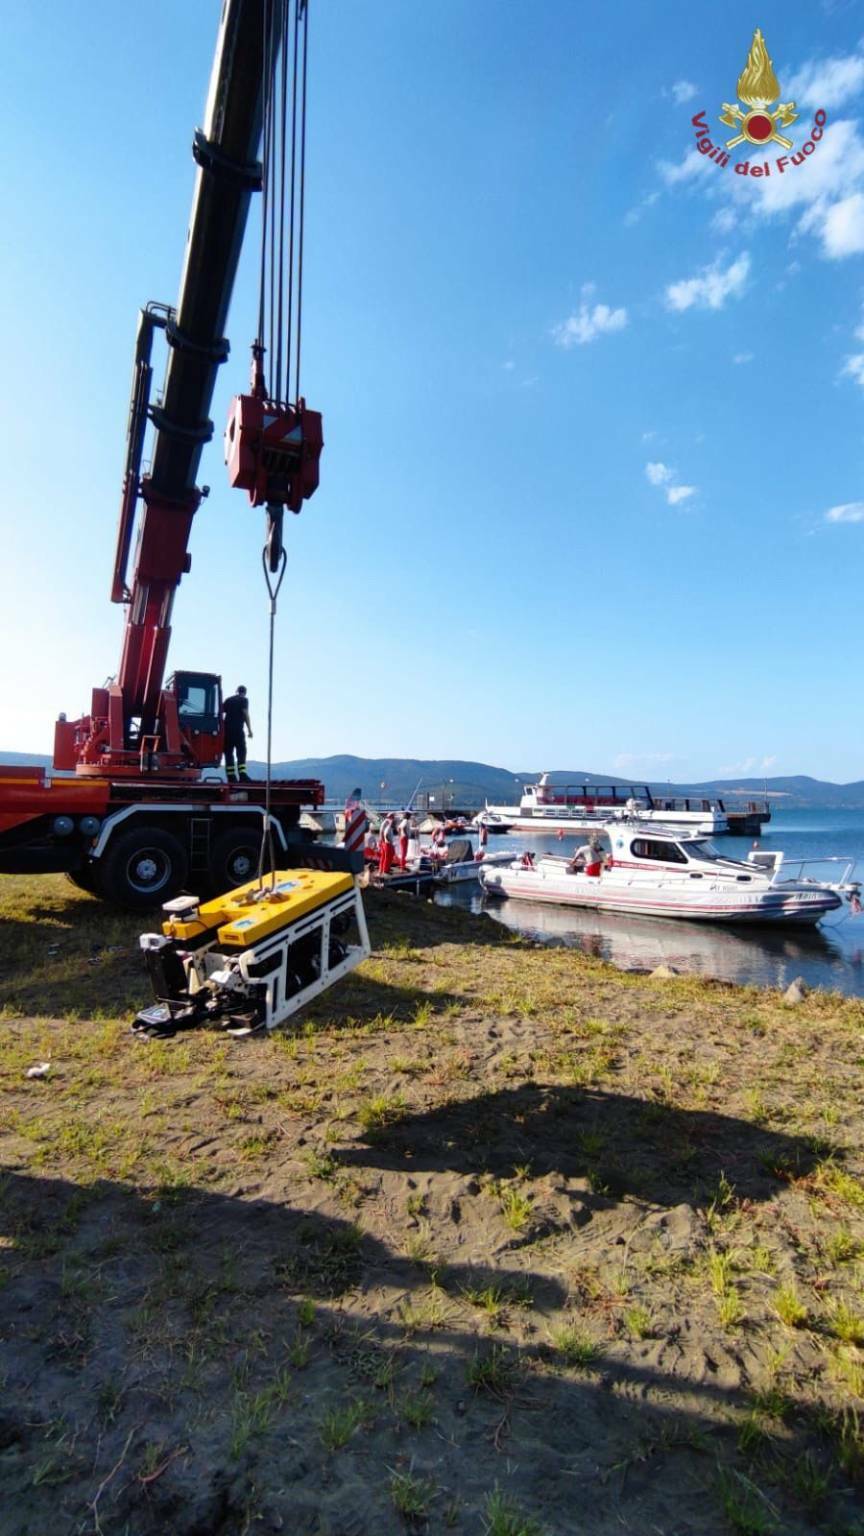 Turista olandese scomparso nel lago di Bracciano: si scandagliano i fondali